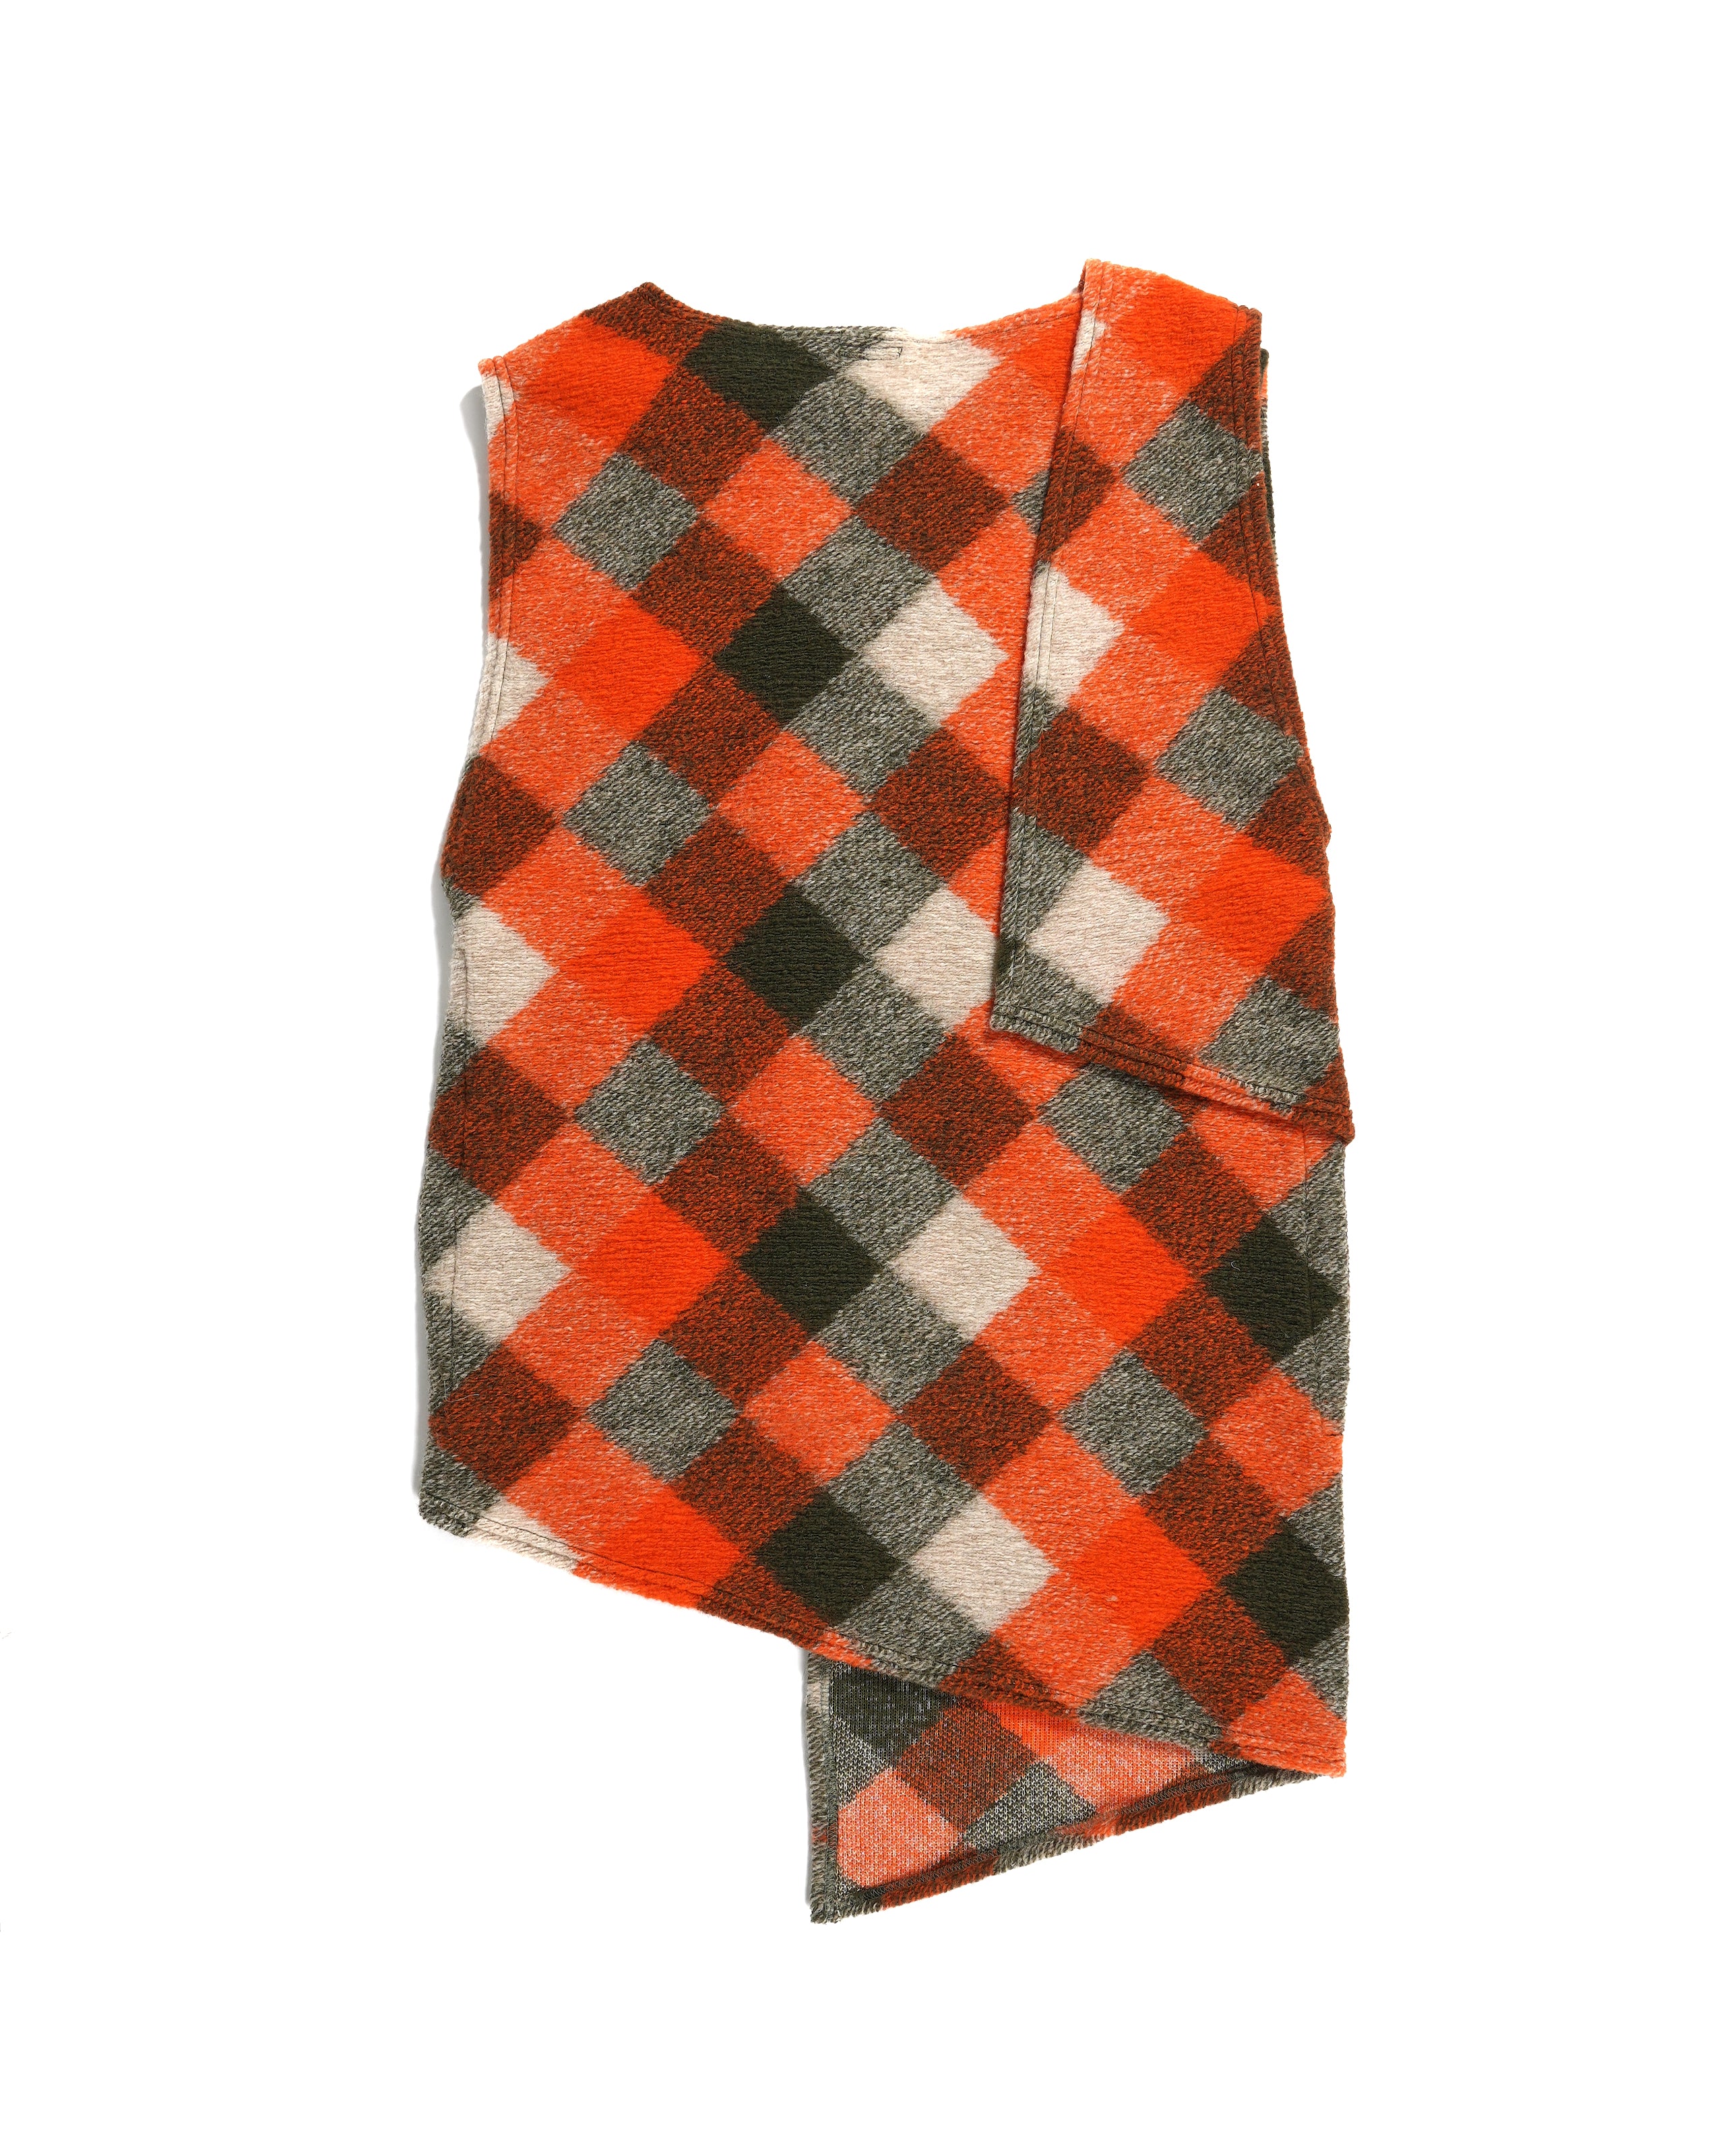 Wrap Knit Vest - Orange/Olive Poly Wool Diamond Knit